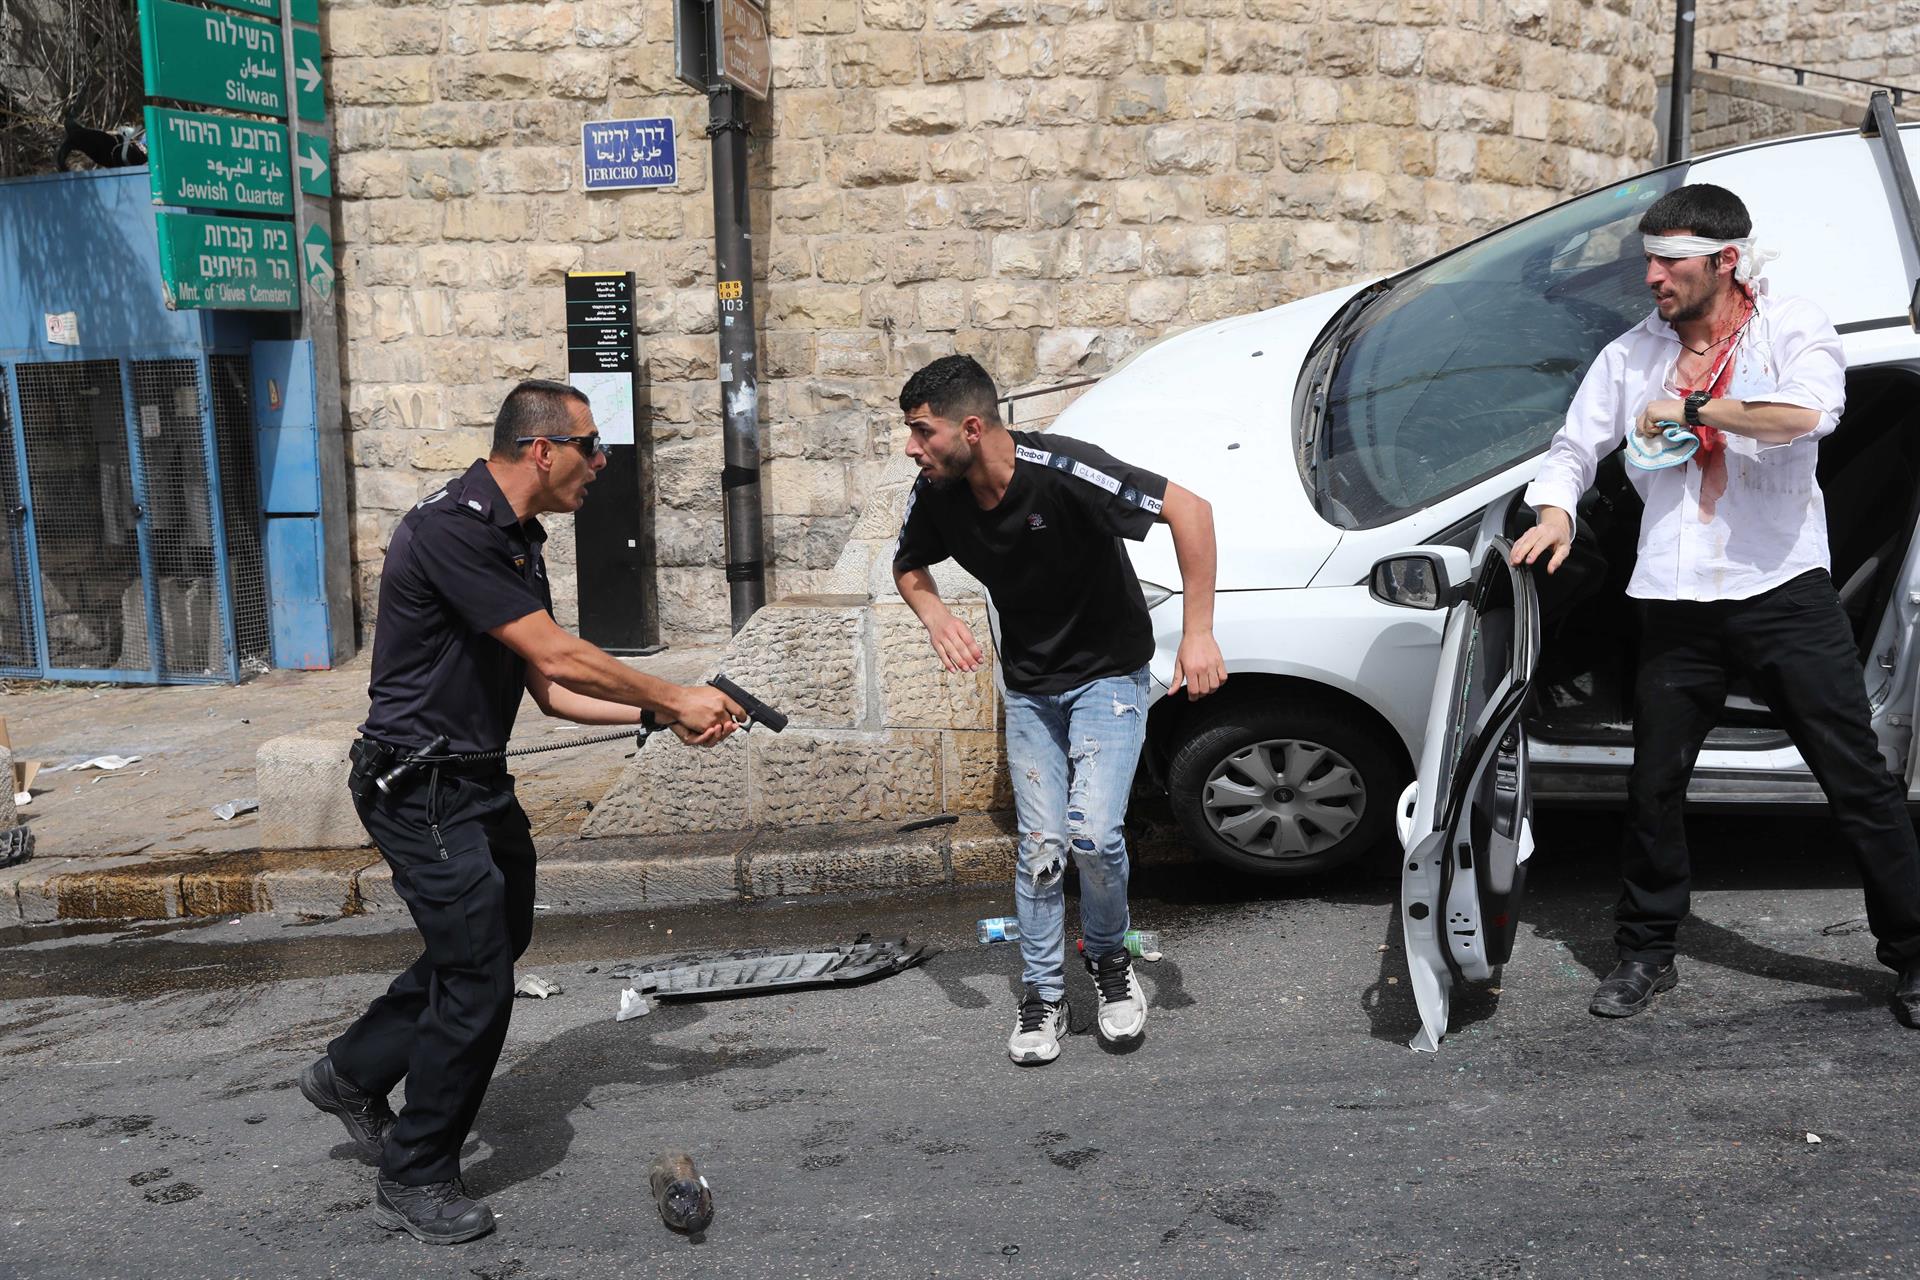 Policial israelense (esquerda) aponta arma para palestino (centro) ao lado de um judeu ortodoxo ferido (direita) em Jerusalém